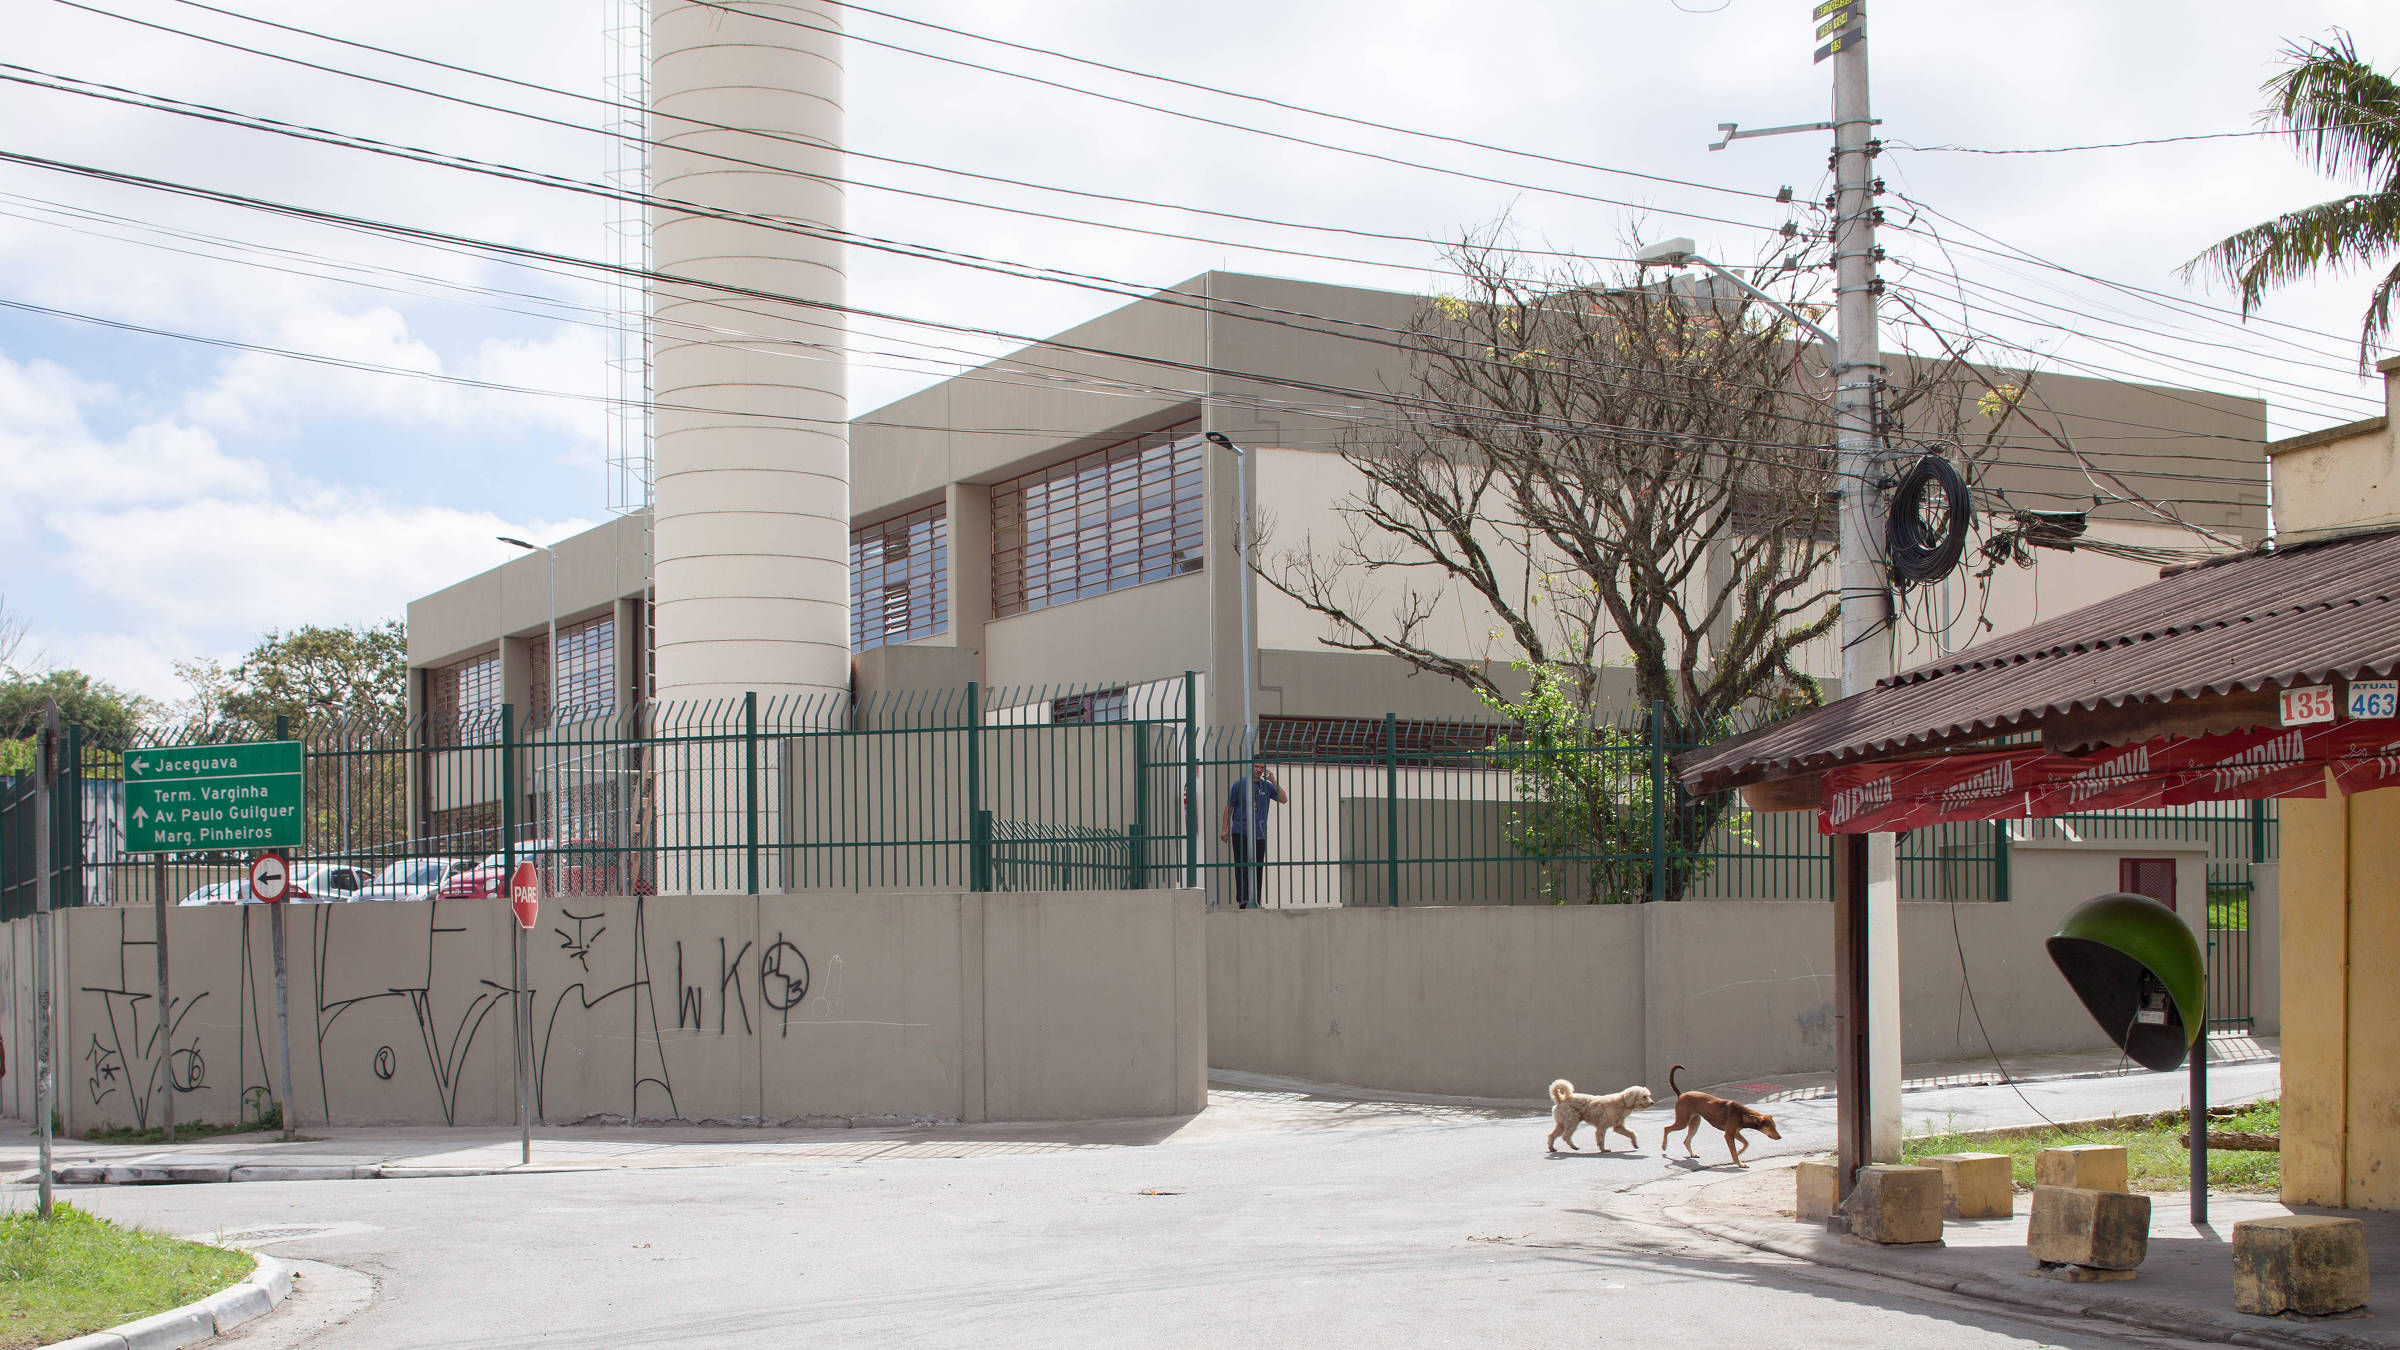 Ensaio da arquitetura dos prédios de escolas públicas na cidade de São Paulo - Fotos Tuca Vieira/Folhapress